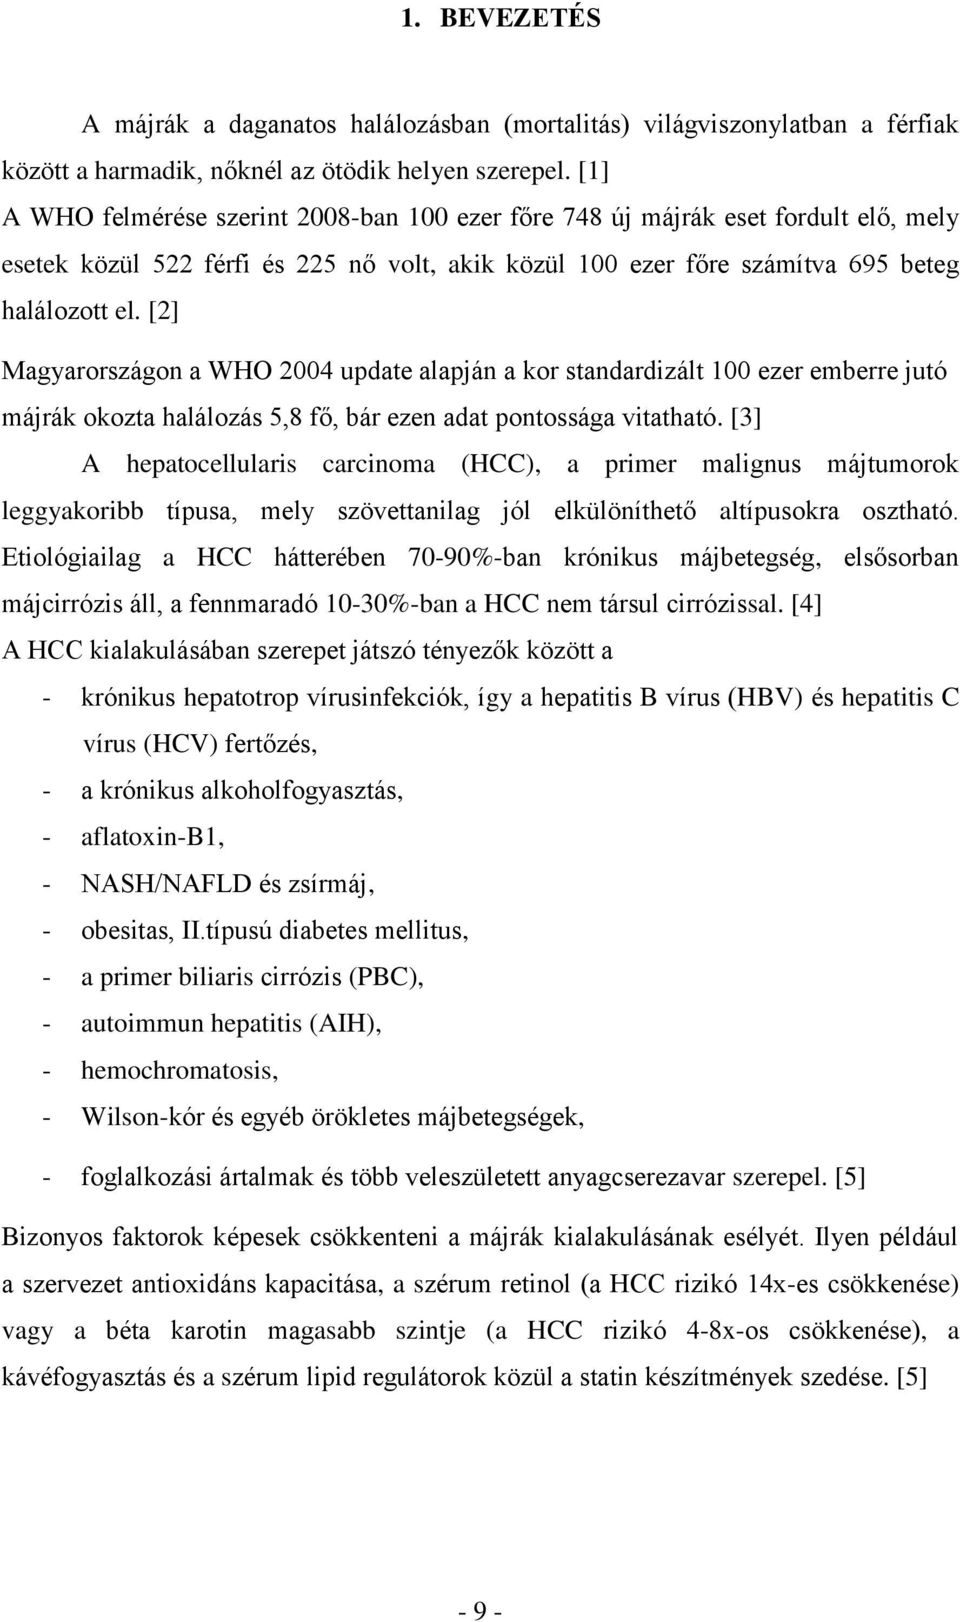 [2] Magyarországon a WHO 2004 update alapján a kor standardizált 100 ezer emberre jutó májrák okozta halálozás 5,8 fő, bár ezen adat pontossága vitatható.